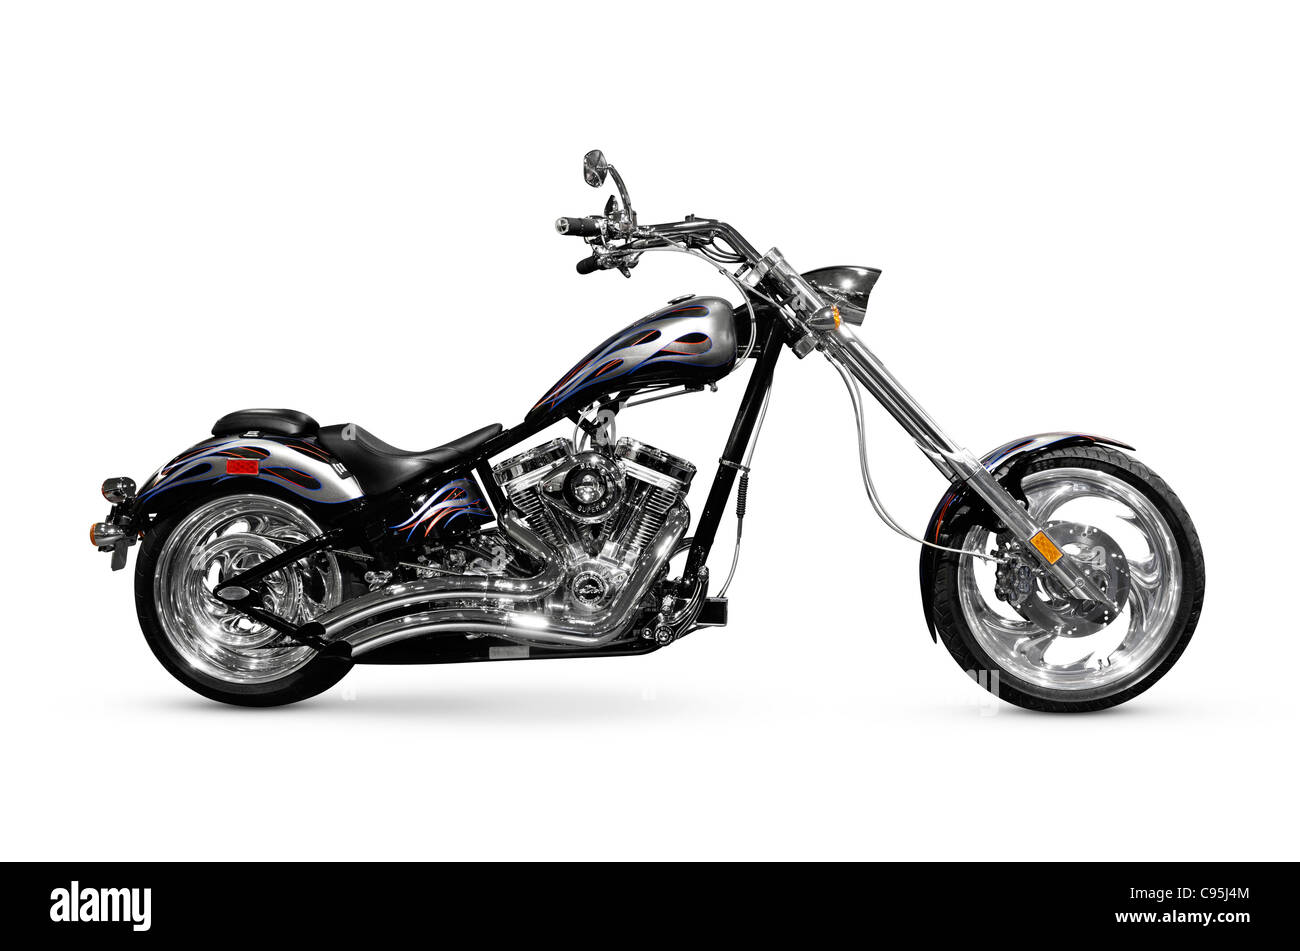 Shiny black with chrome chopper. Customized motorcycle. Isolated on white background Stock Photo